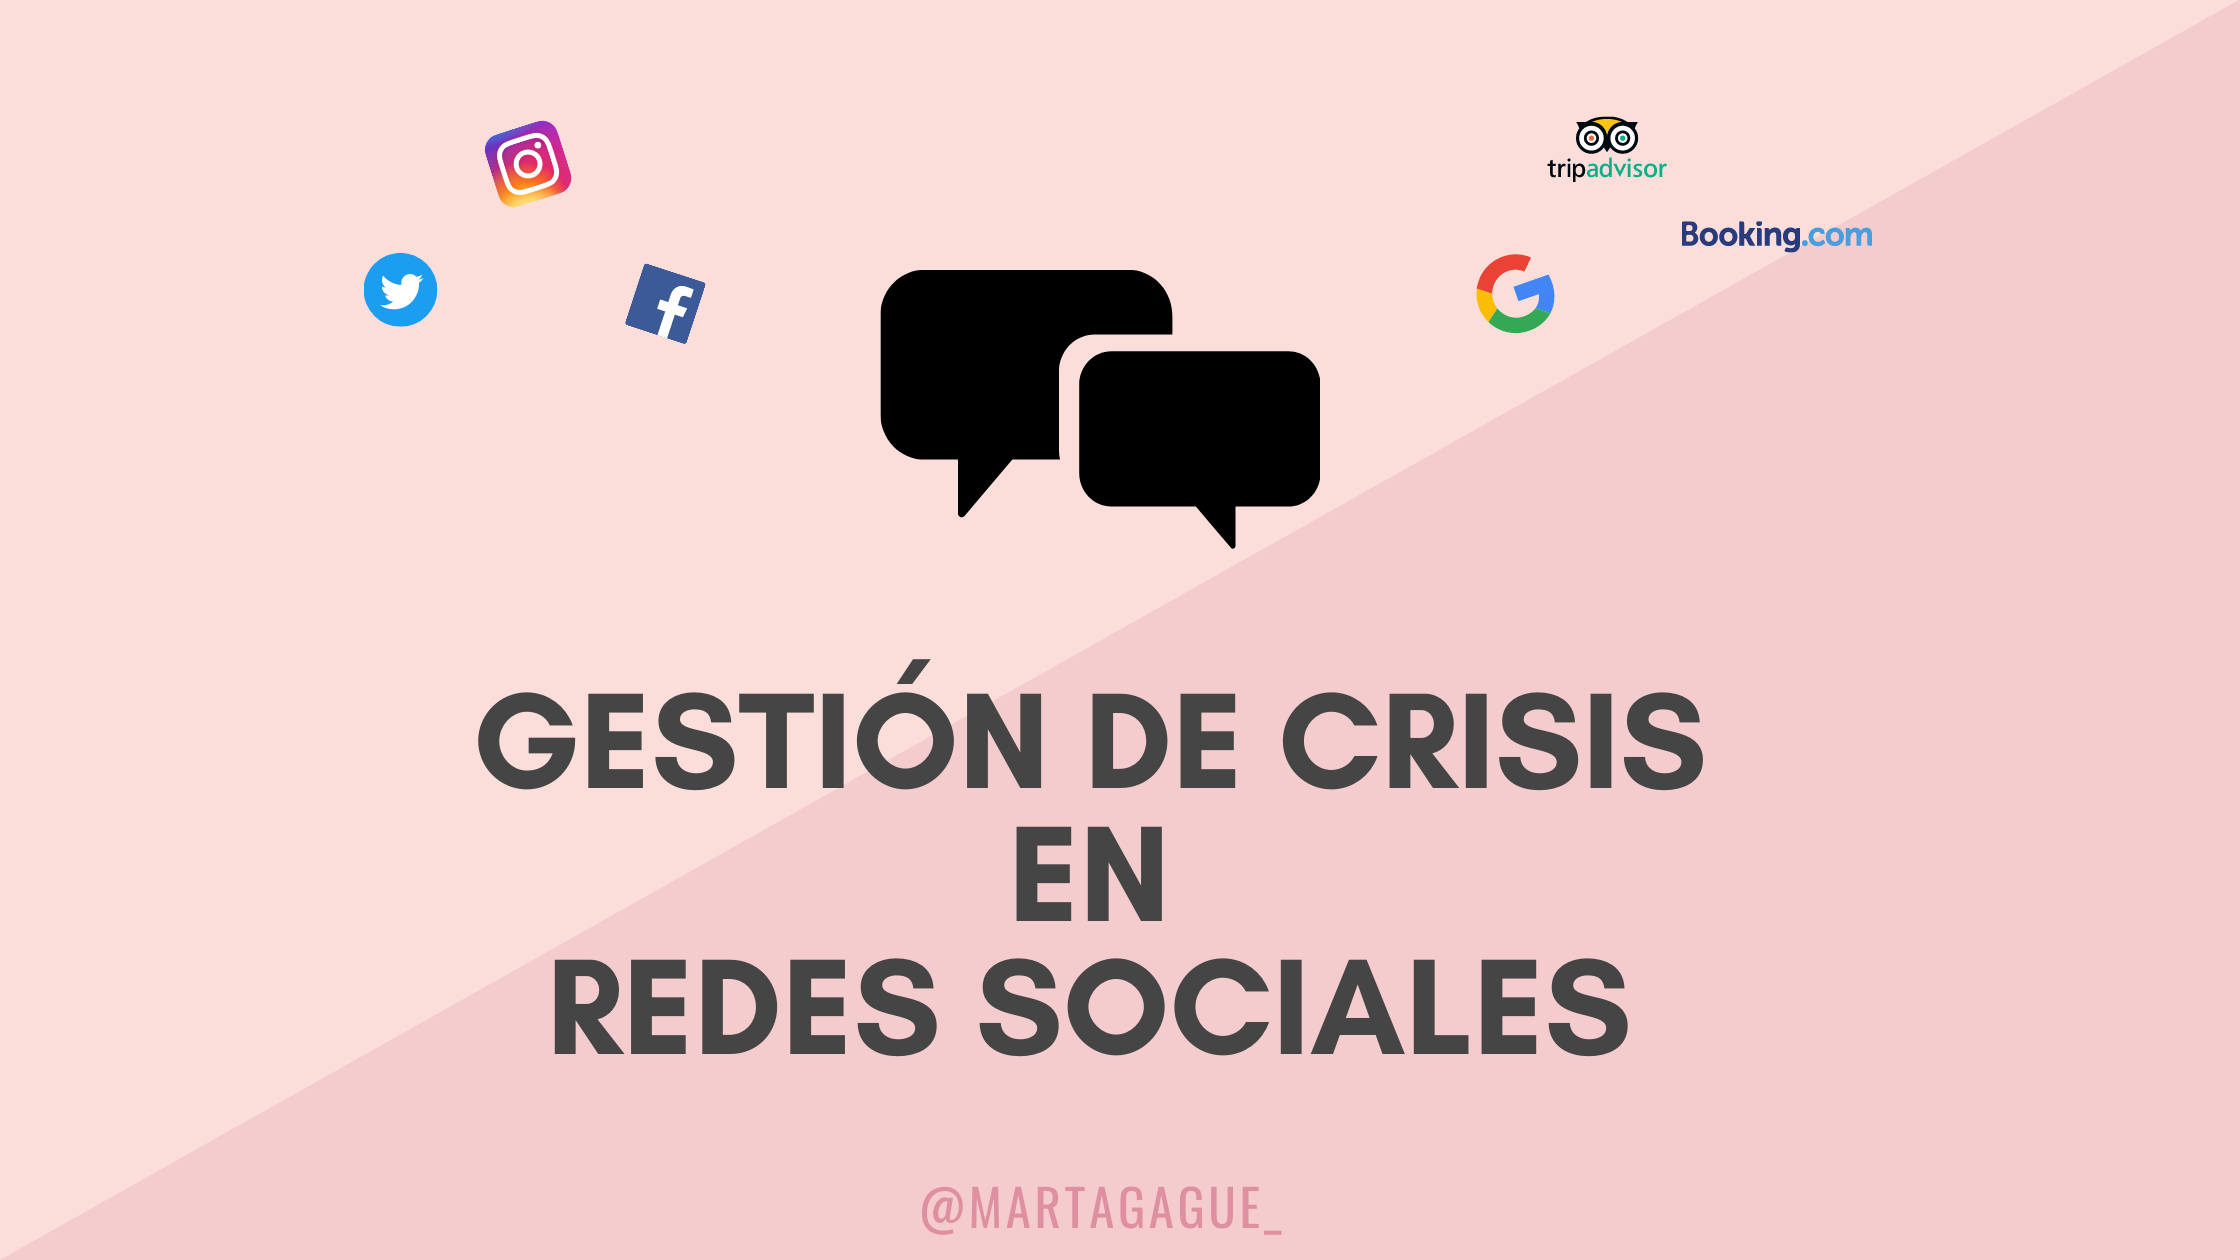 GESTION-CRISIS-REDES-SOCIALES-MARTA-GAGUE-ZARAGOZA